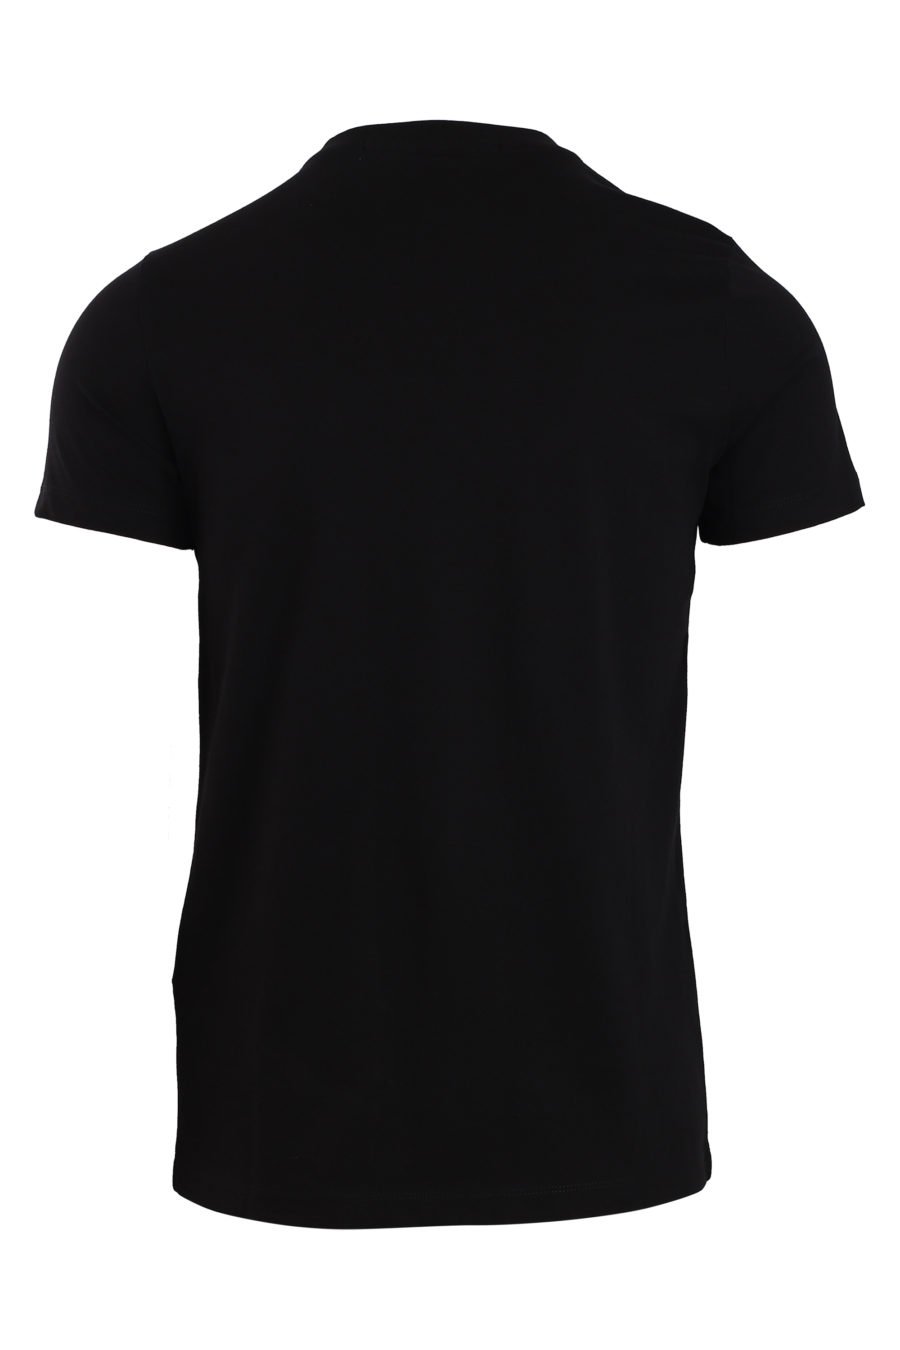 Schwarzes T-Shirt mit gelbem 3D-Logo - IMG 0822